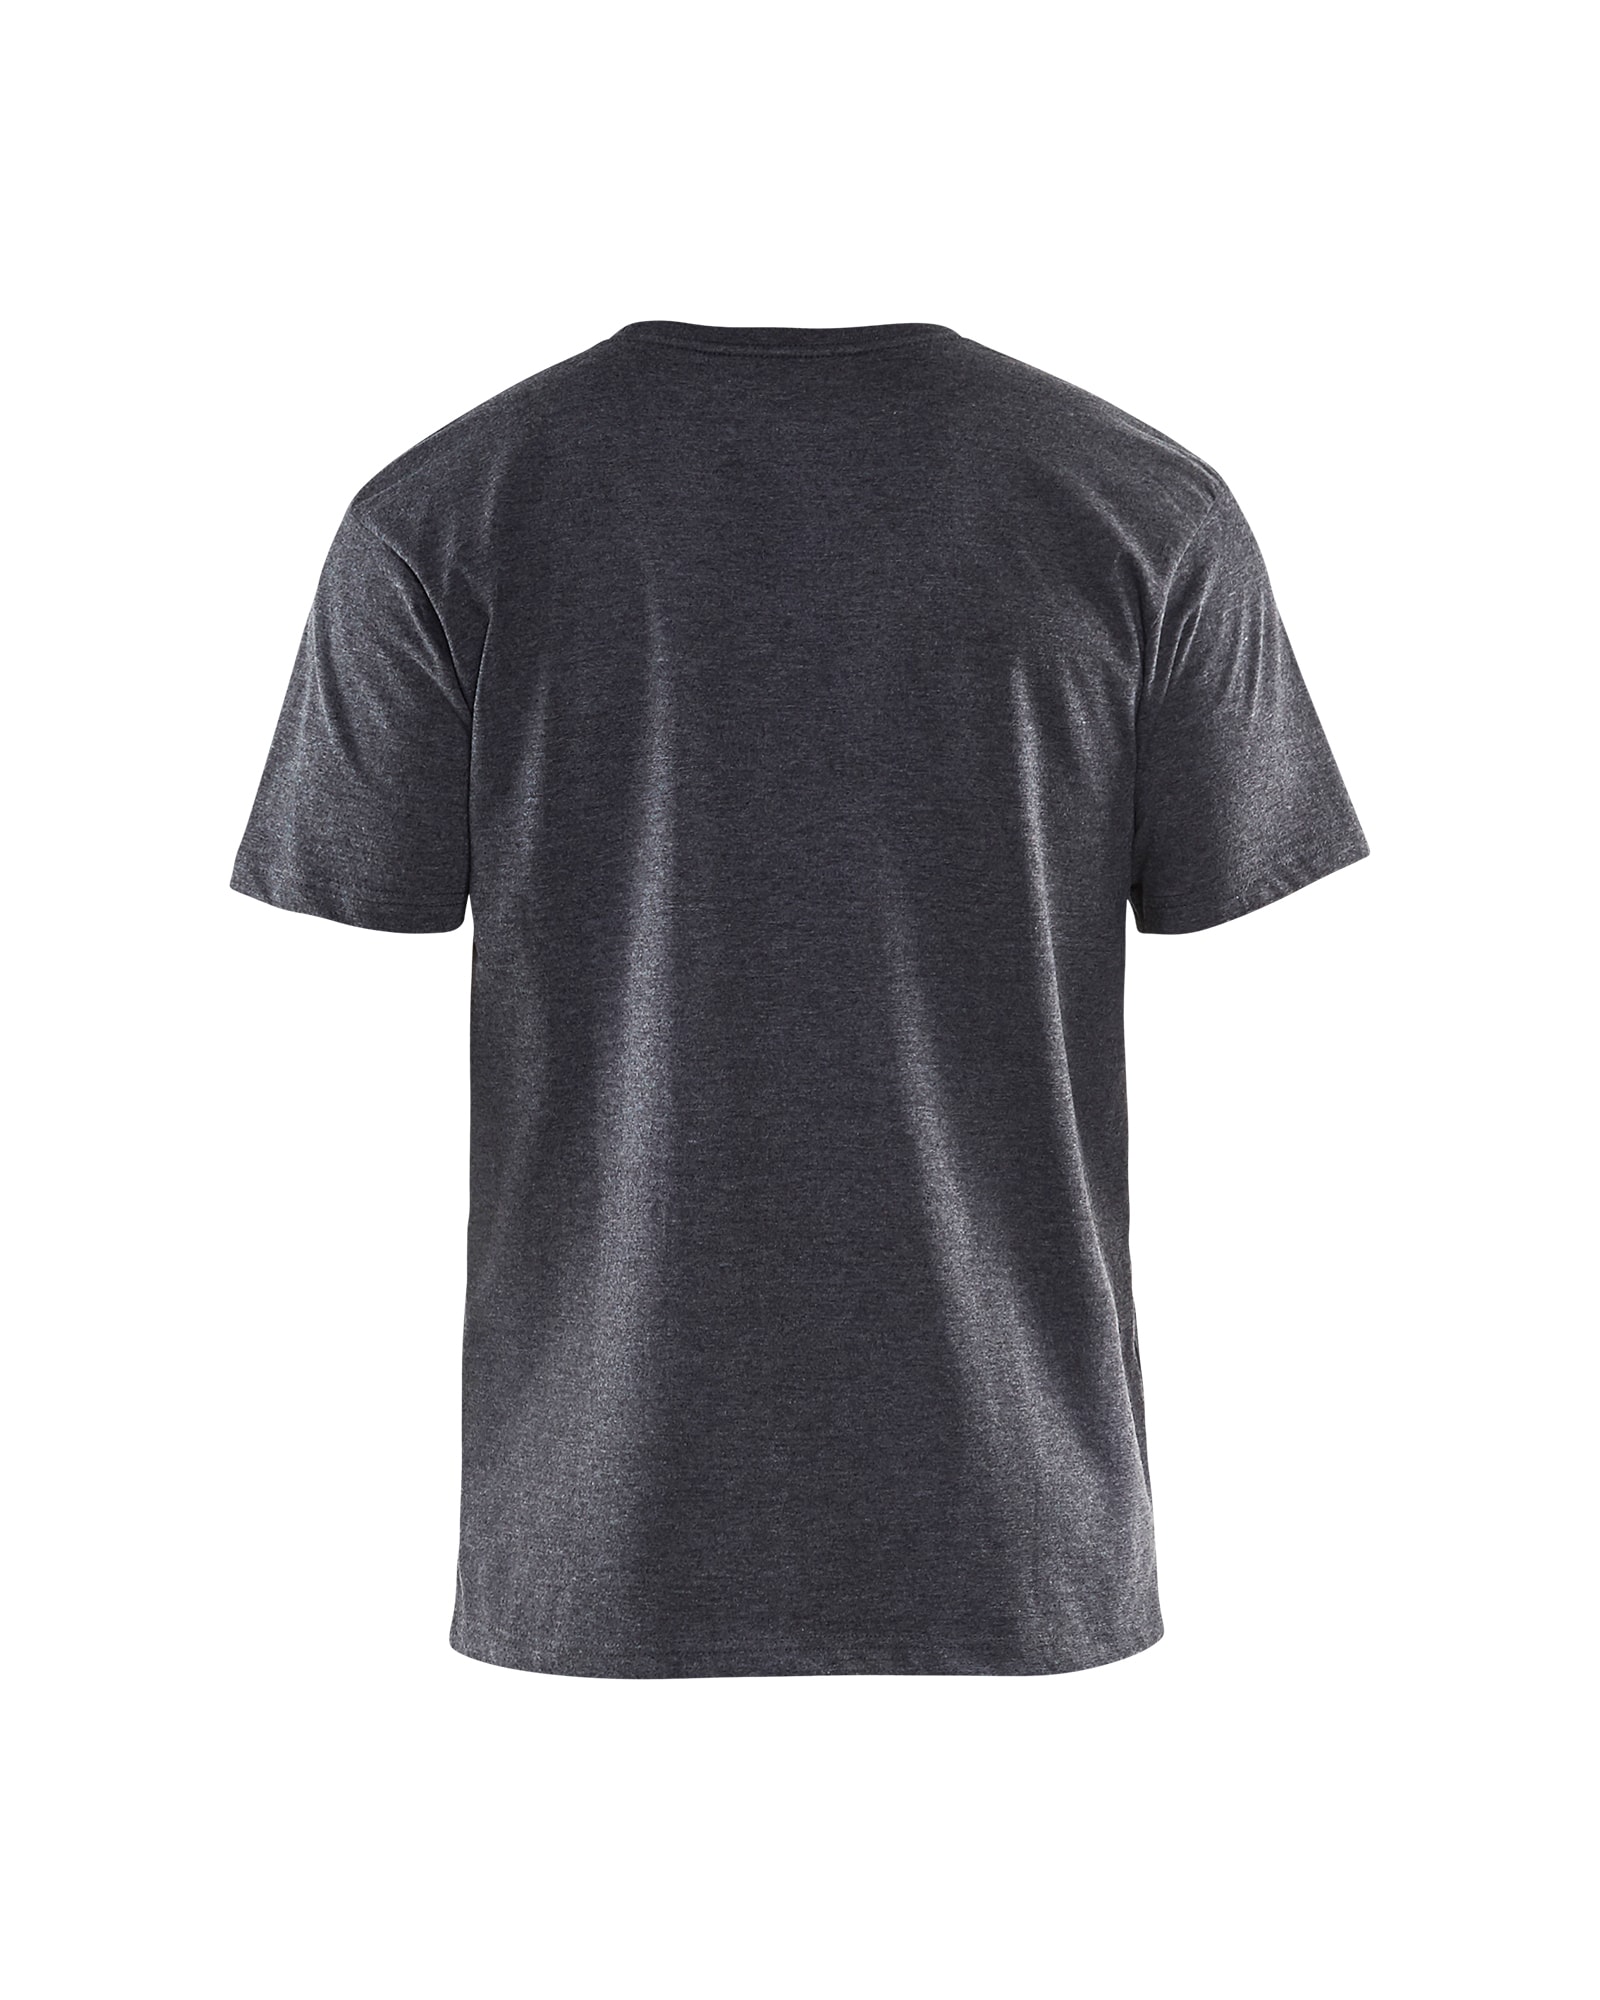 3525 1053 Blakläder T-Shirt schwarz melange